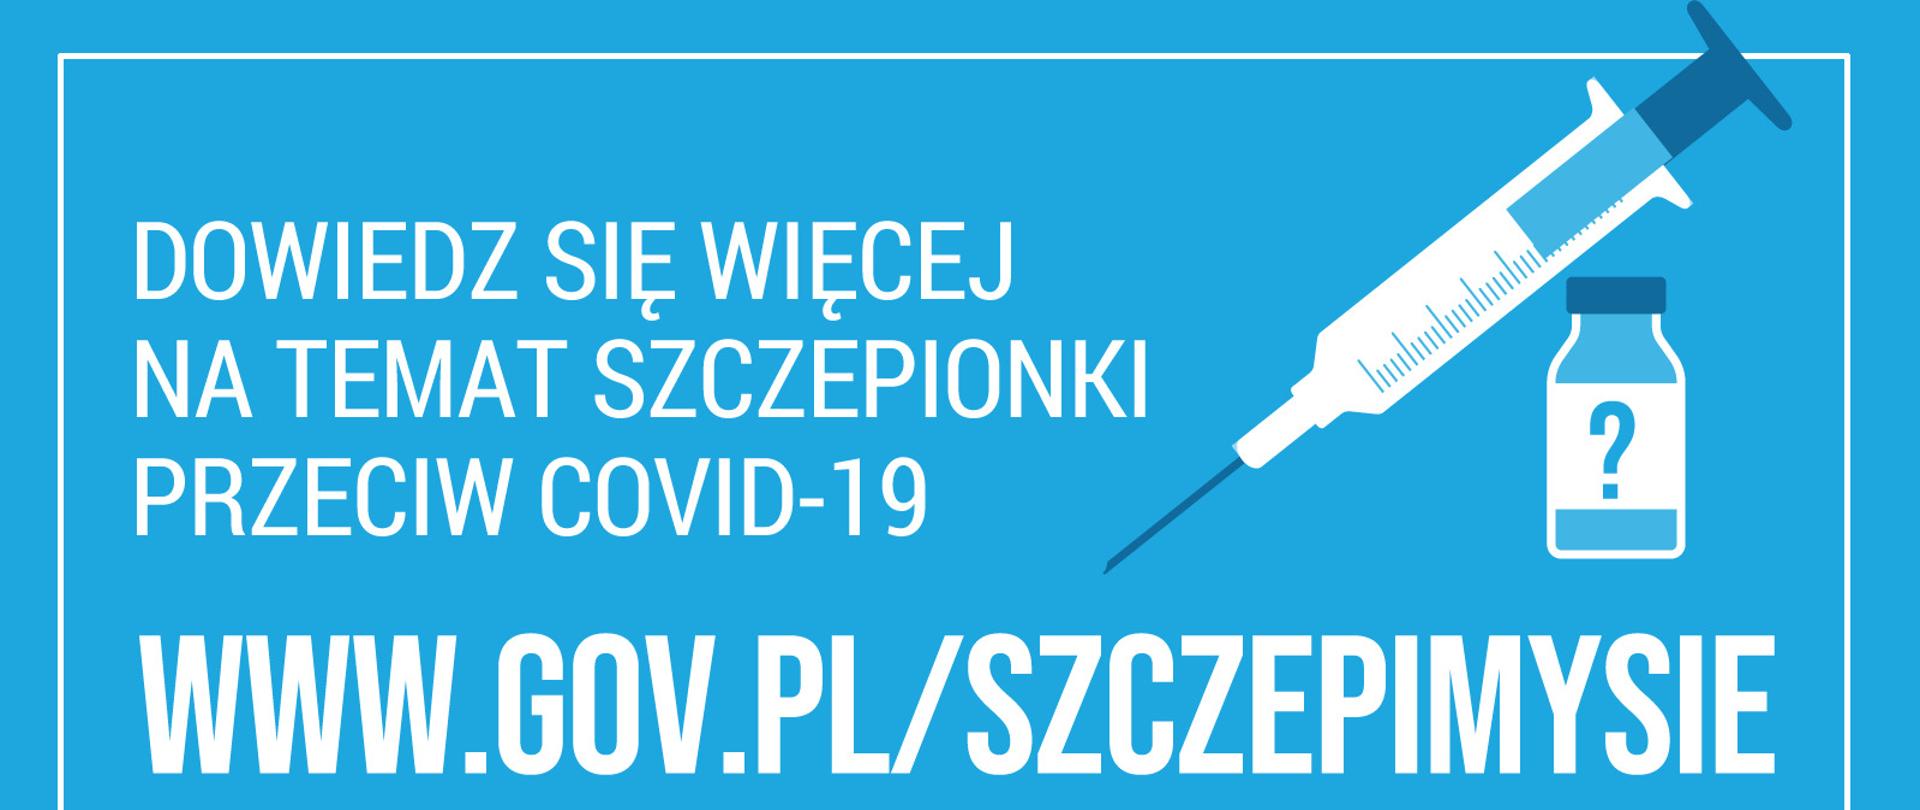 Logo akcji #SZCZEPIMYSIĘ odsyłające do strony www.gov.pl/szczepimysie, na której można dowiedzieć się więcej na temat szczepionki przeciw COVID-19